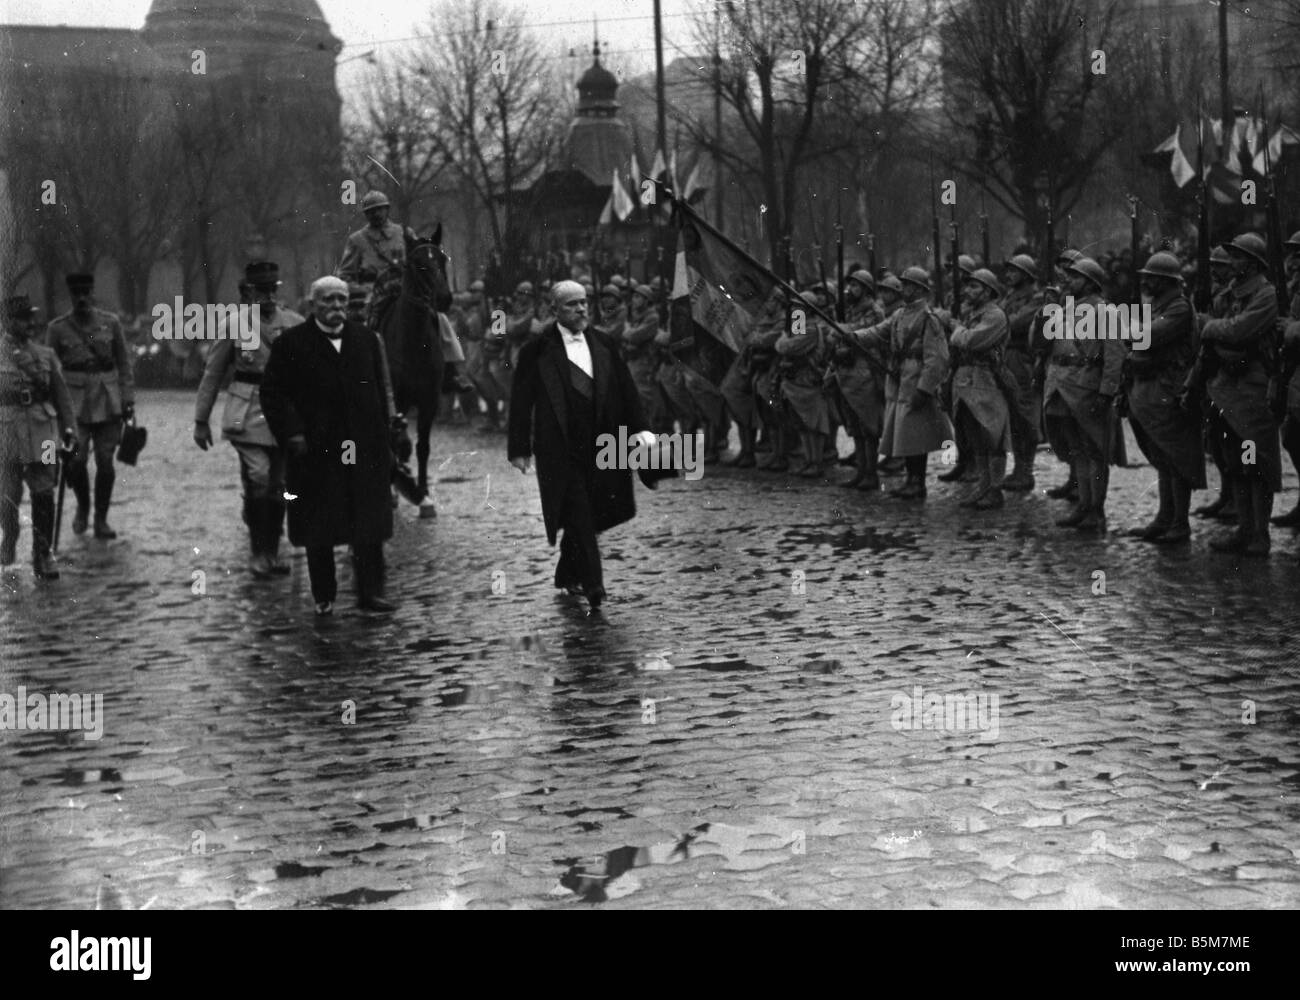 1FK 52 F1918 E Poincare a Metz 1918 Foto Raymond Poincaré politico francese 1913 20 9 Pres del 3 Rep 1860 1934 Milit revisione b Foto Stock